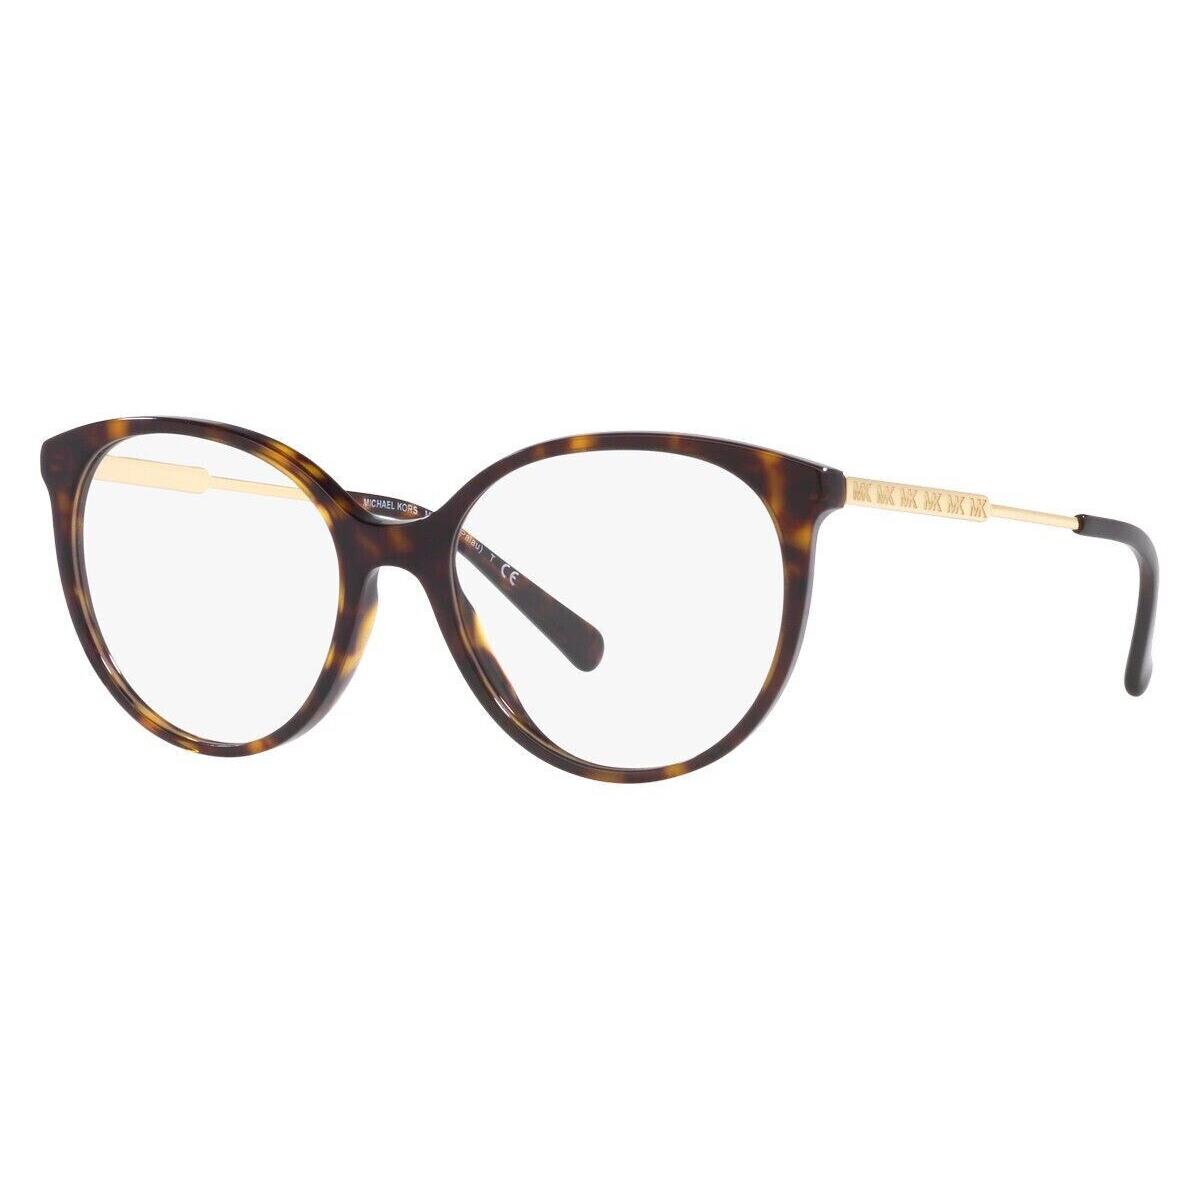 Michael Kors Palau Eyeglasses MK4093 3006 Havana Optical Frame 52-17-140